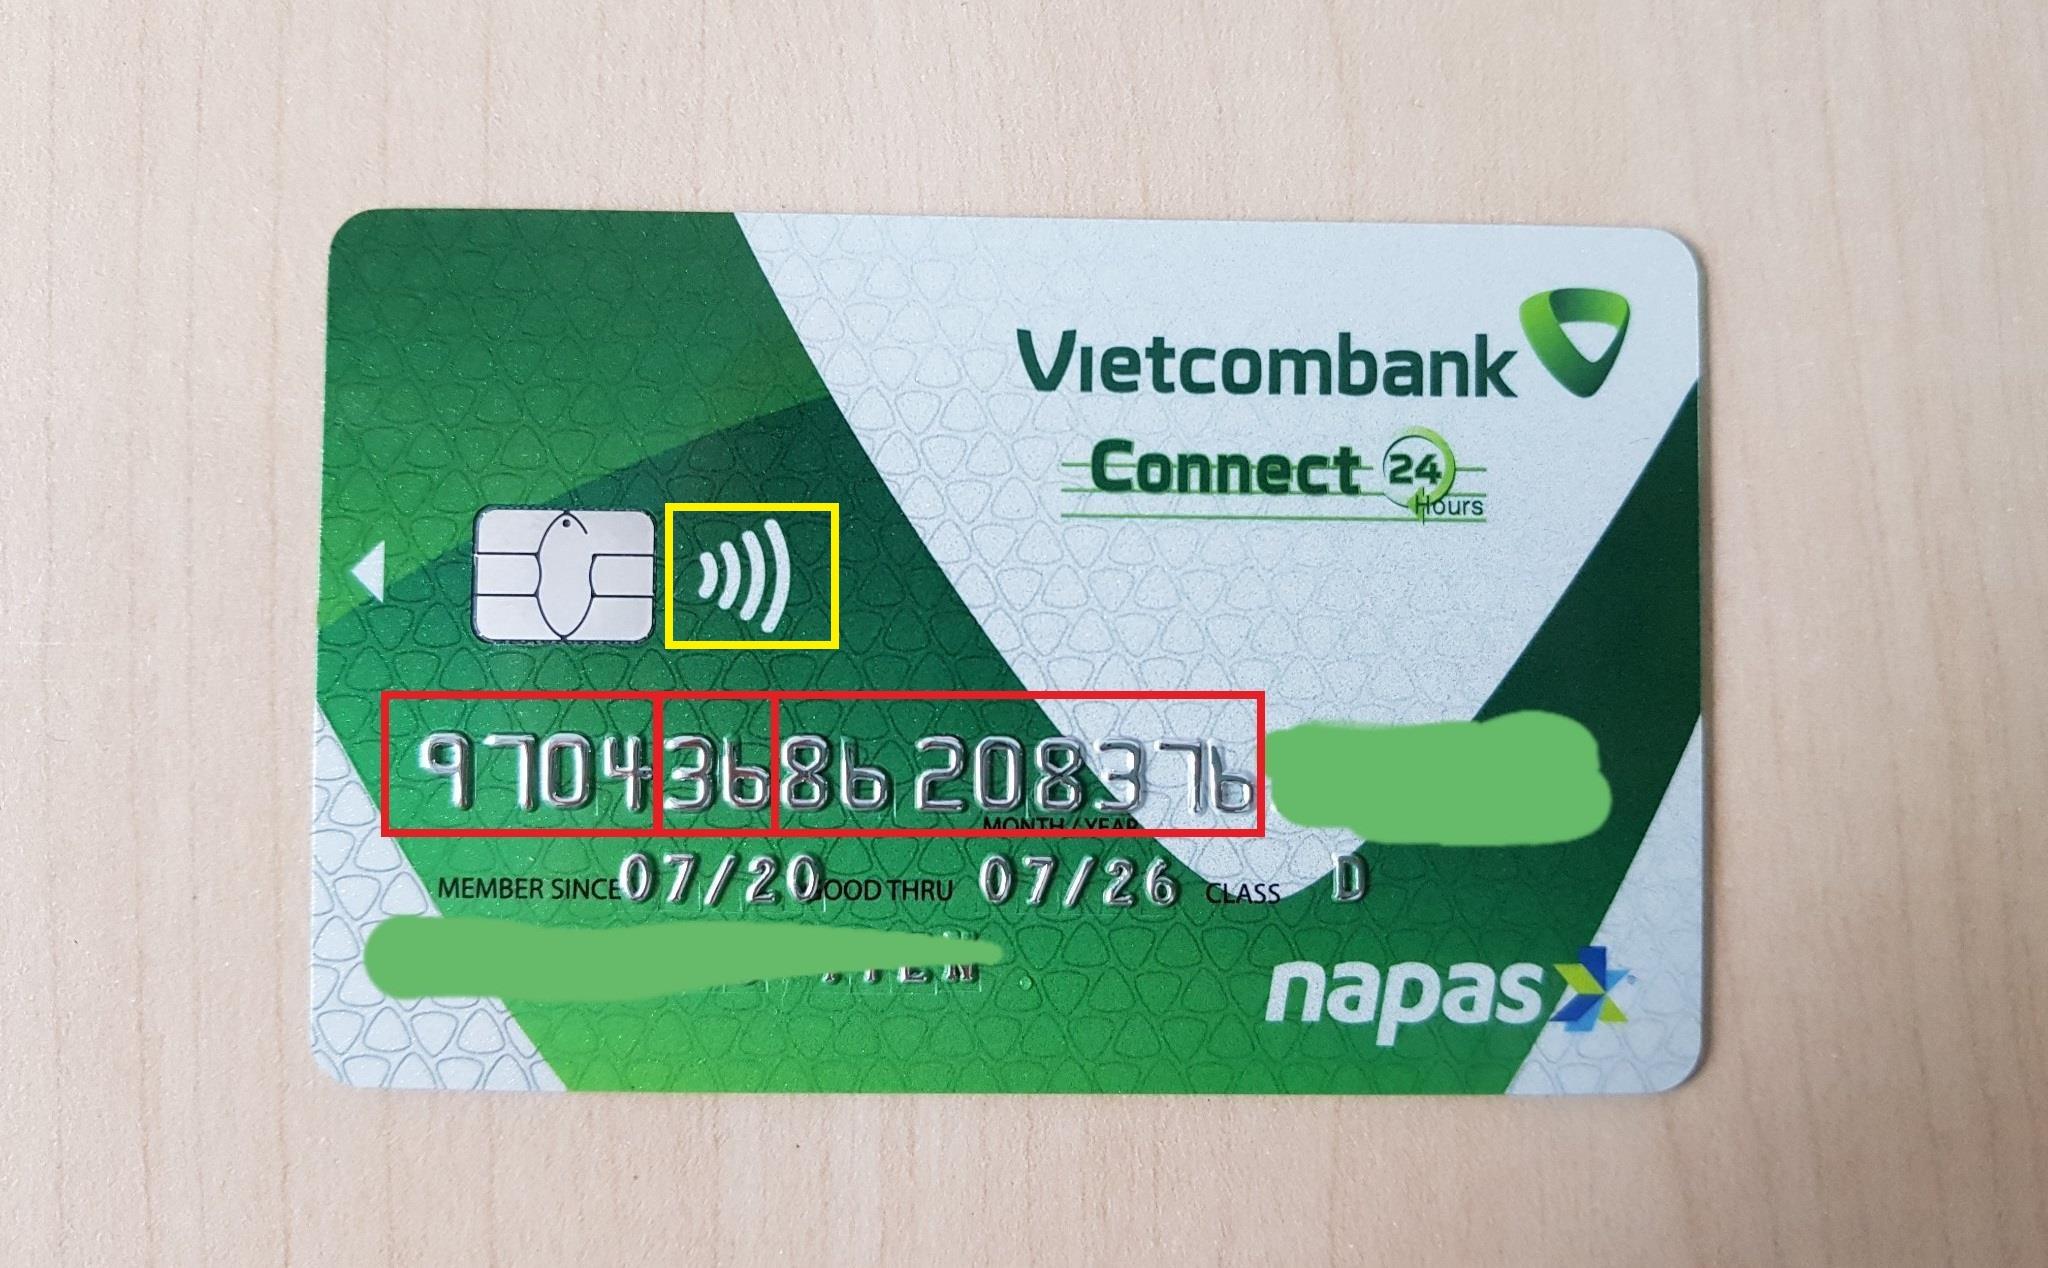 Đăng ký và liên hệ Member since trên thẻ ATM là gì cho thông tin chi tiết